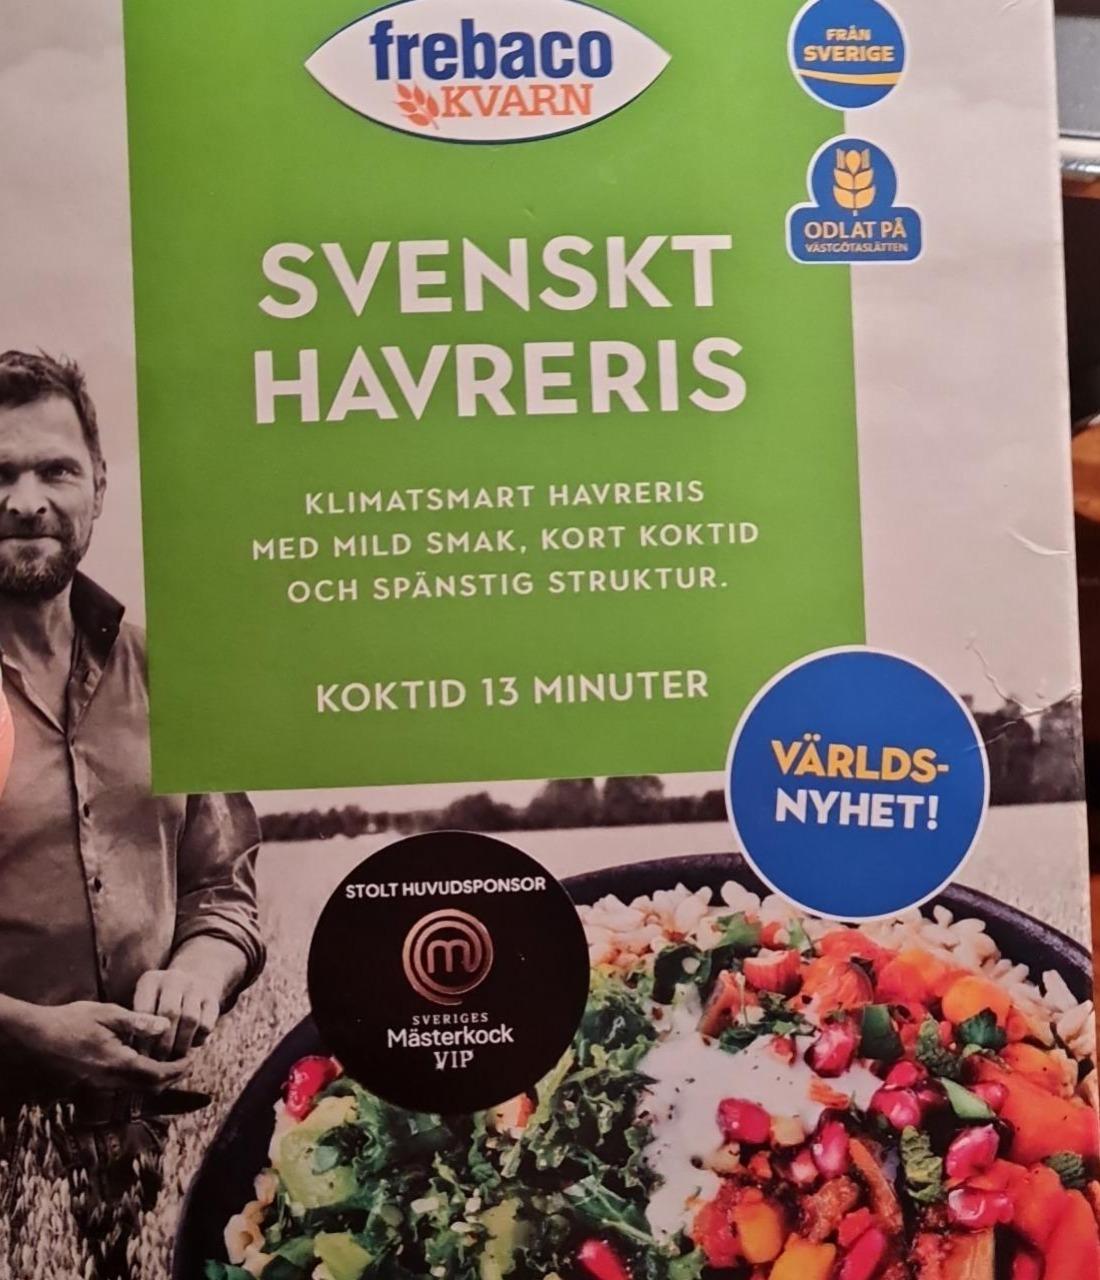 Fotografie - Svenskt Havreris Frebaco Kvarn